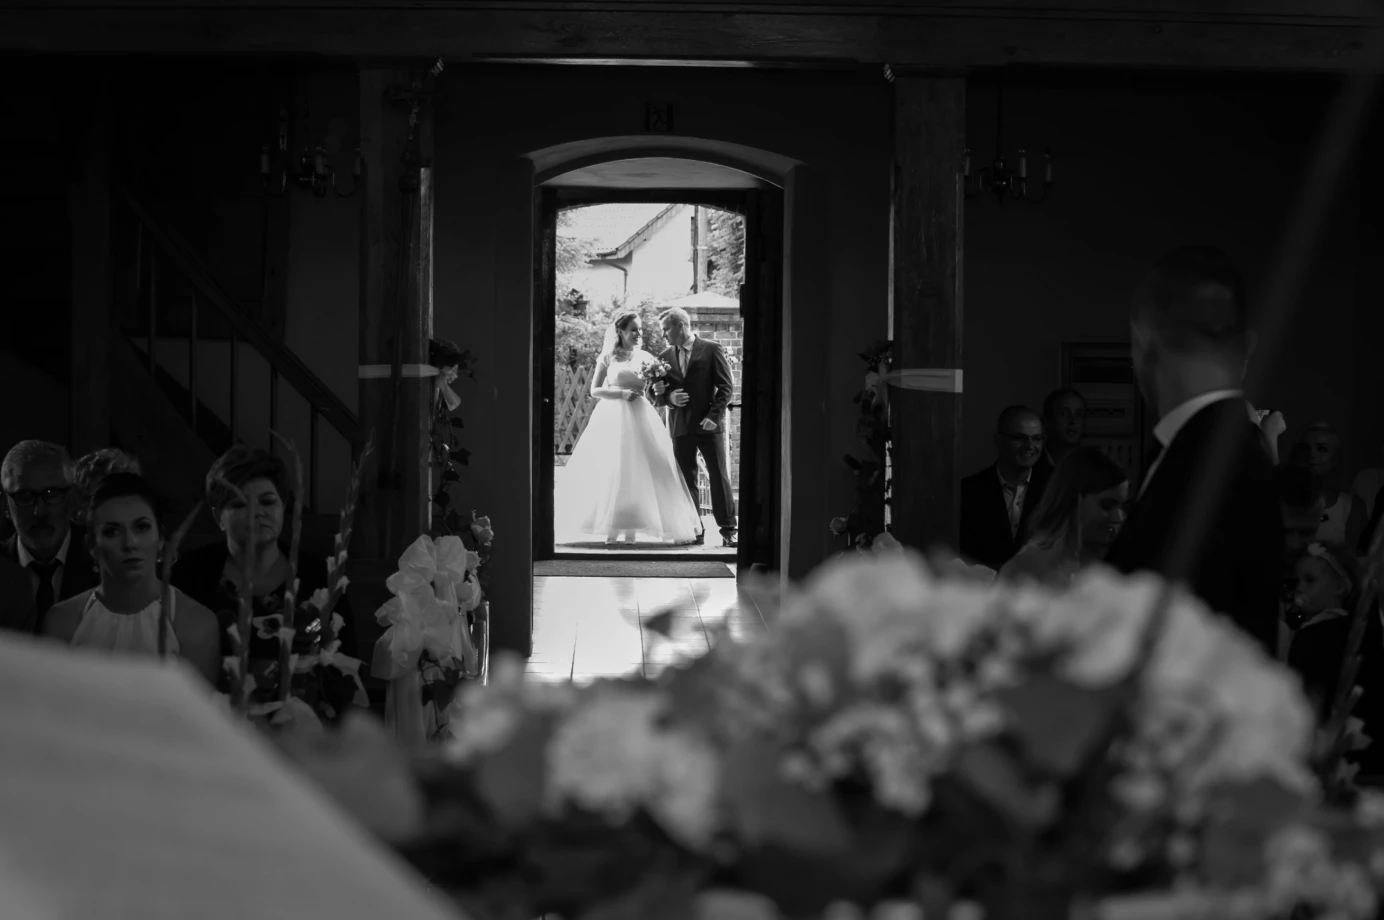 zdjęcia szczecin fotograf manufaktura-obrazkow portfolio zdjecia slubne inspiracje wesele plener slubny sesja slubna